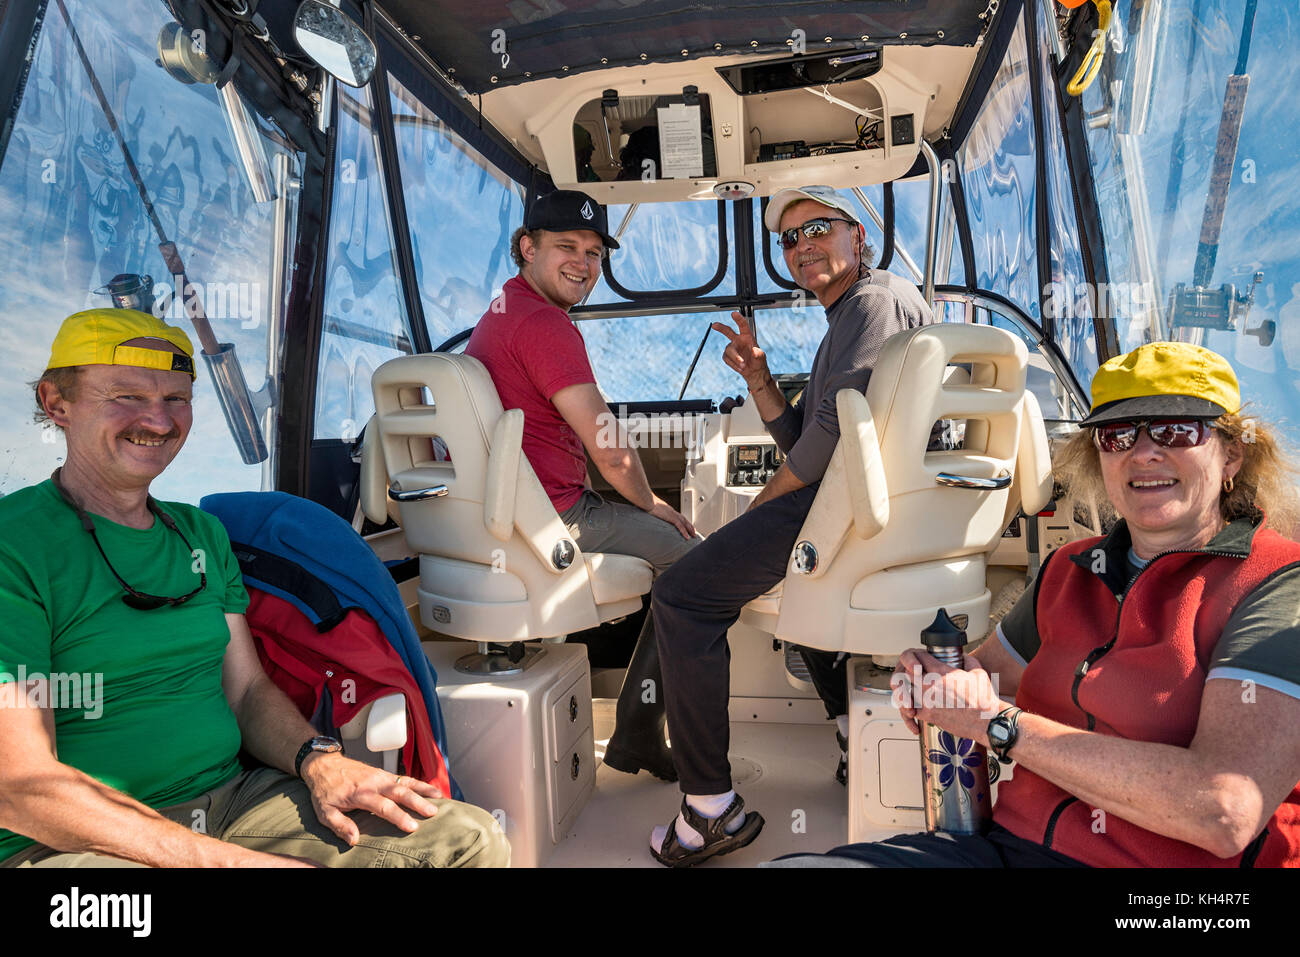 Vier Personen sitzen in einem Schnellboot und kehren von einer Angeltour zurück, lächeln, mit Blick auf die Kamera, Vancouver Island, British Columbia, Kanada Stockfoto